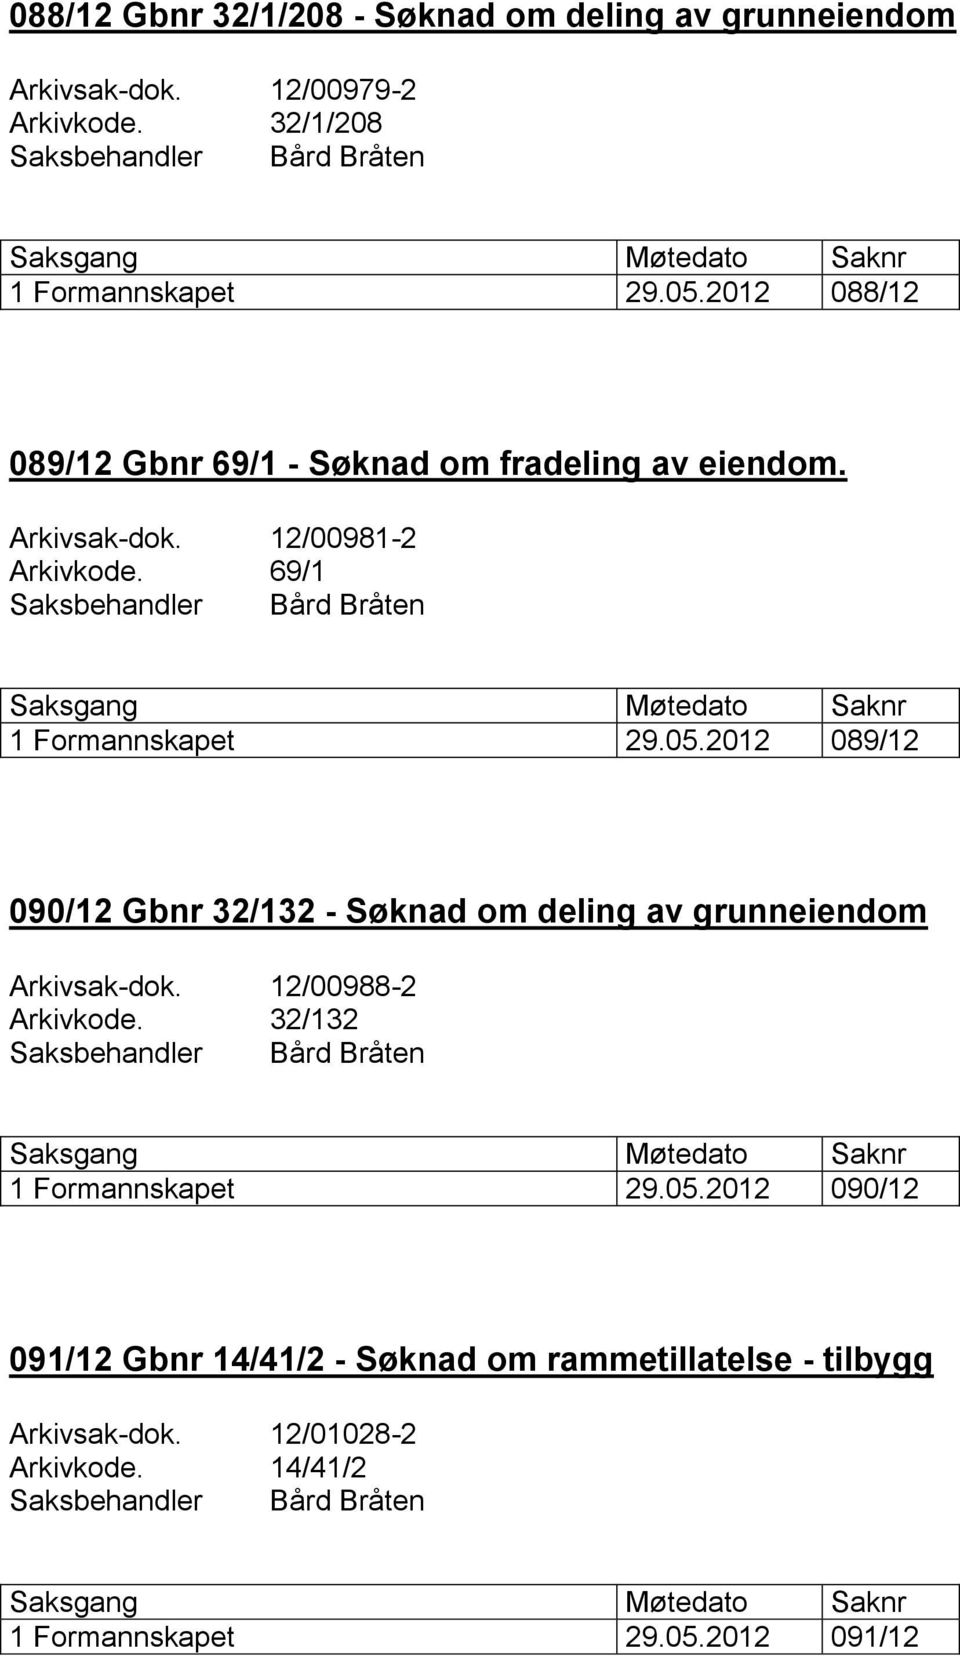 2012 089/12 090/12 Gbnr 32/132 - Søknad om deling av grunneiendom Arkivsak-dok. 12/00988-2 Arkivkode. 32/132 1 Formannskapet 29.05.